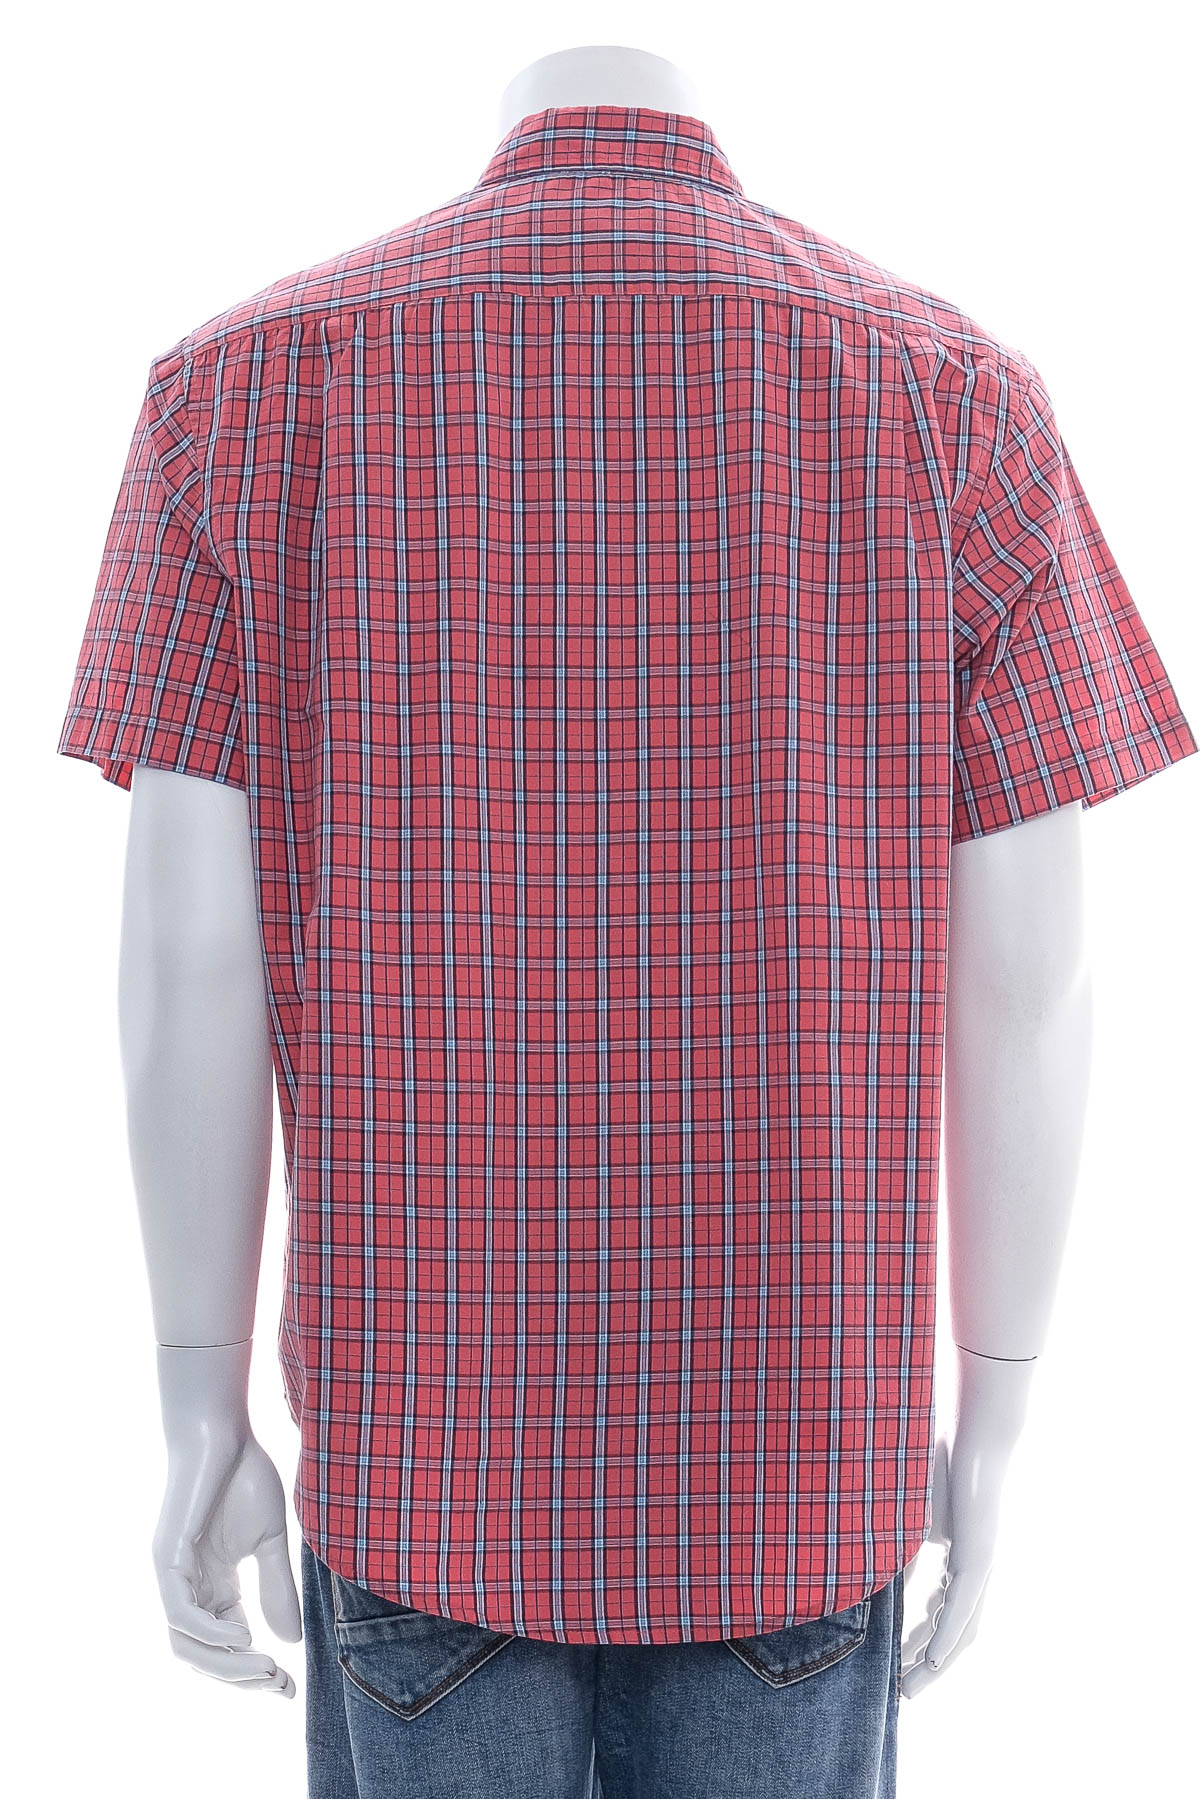 Men's shirt - U.S. Polo ASSN. - 1